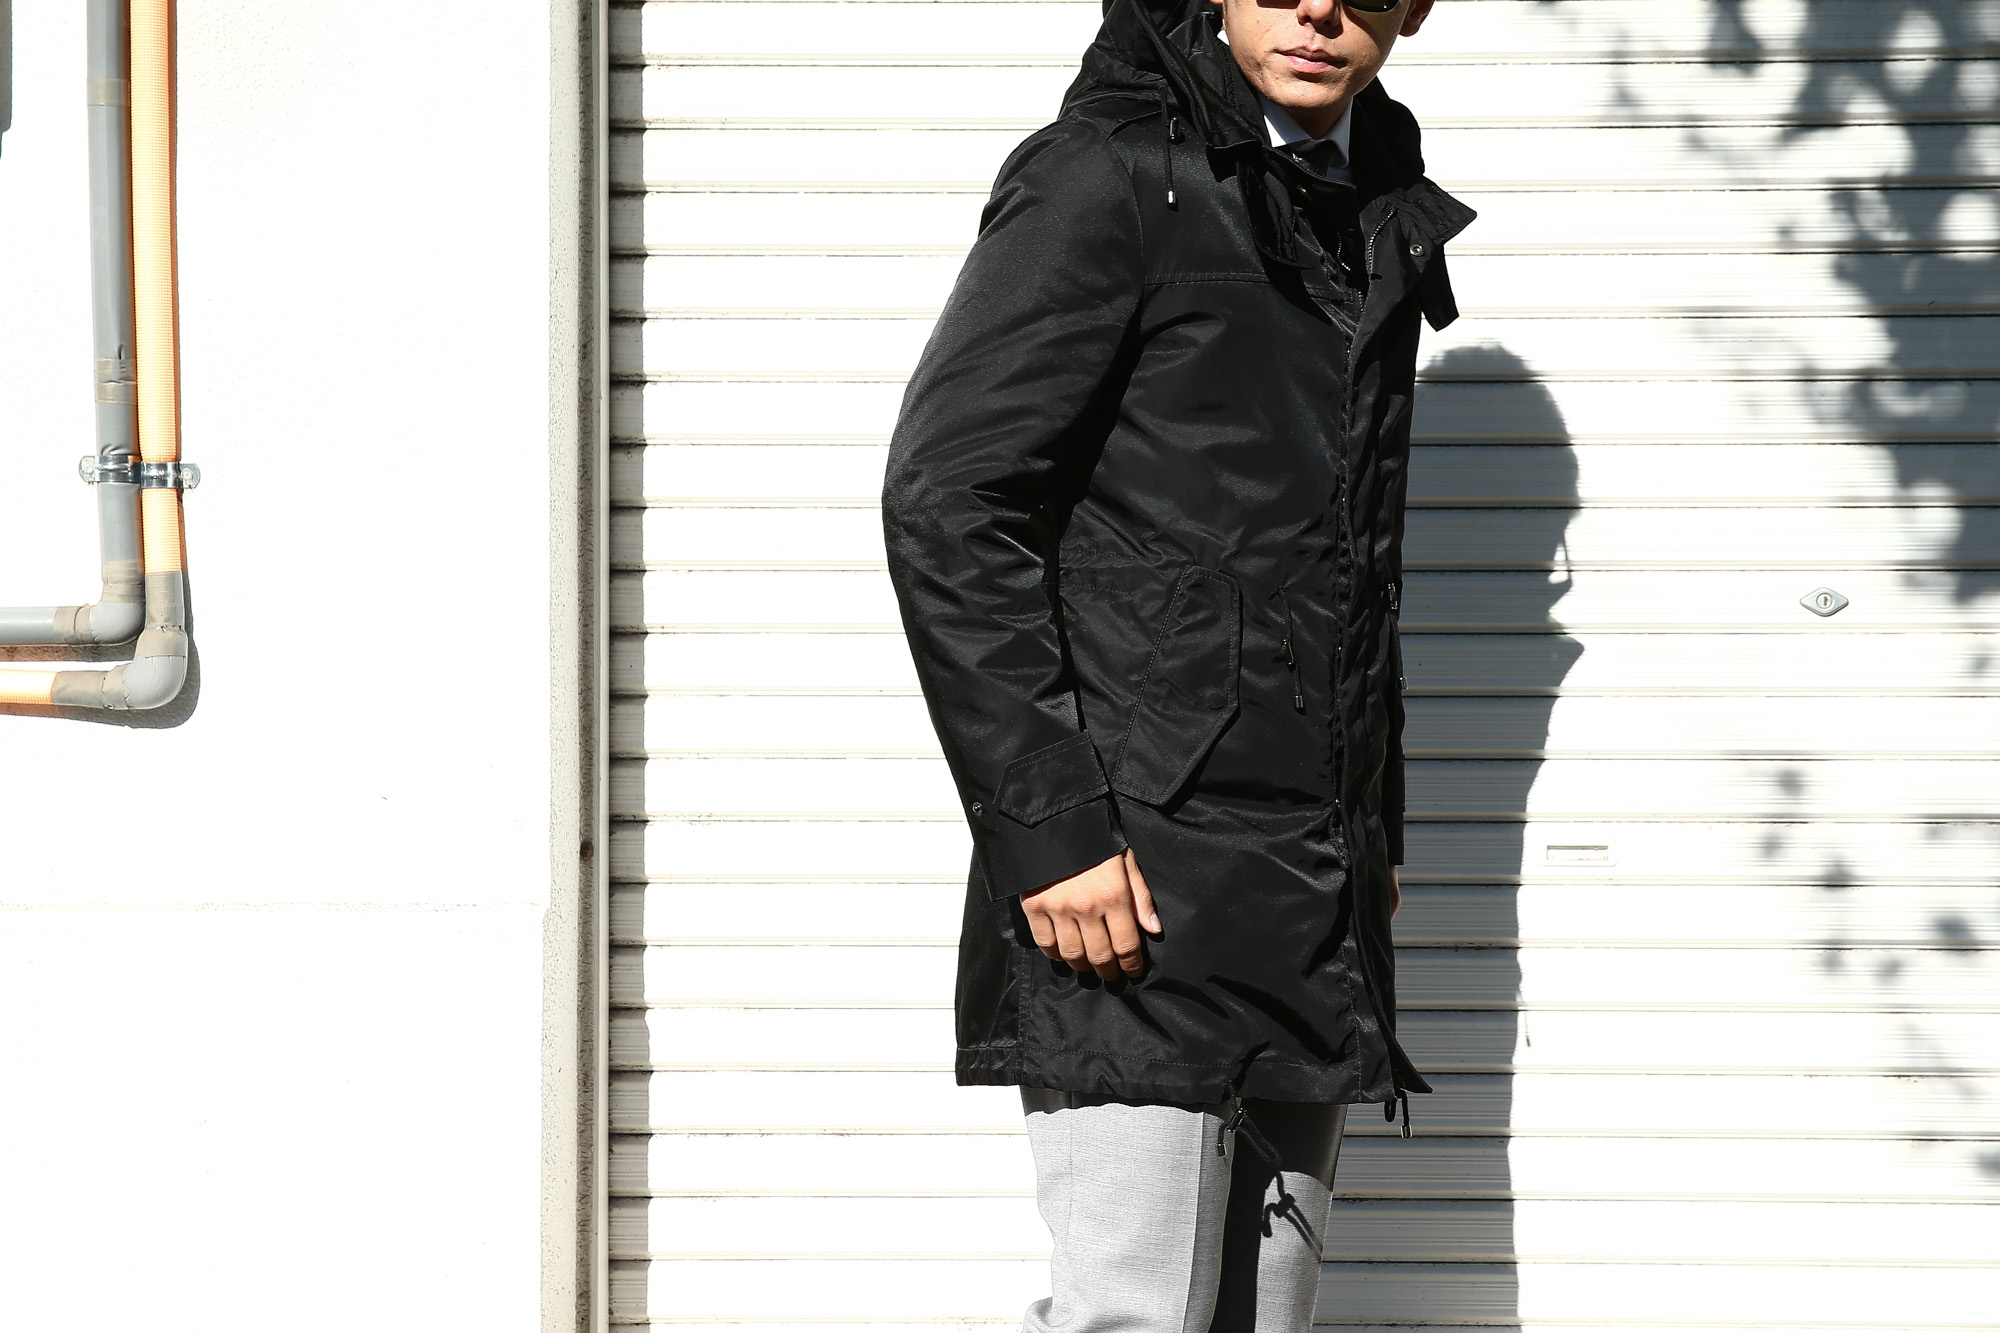 【Sealup / シーラップ】 M51 Mods coat (M51 モッズコート) サーモアライニング ダウンライナー付き モッズコート BLACK (ブラック・36) Made in italy (イタリア製) 2017 秋冬新作 sealup シーラップ 愛知 名古屋 Alto e Diritto アルト エ デリット